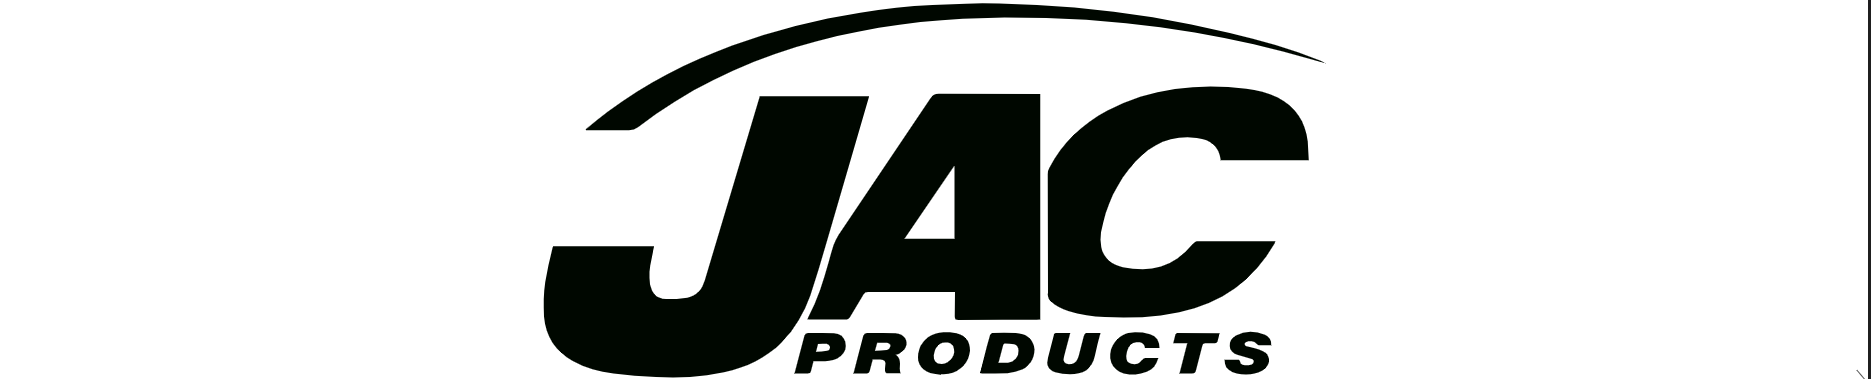 Whitlam Group| image: jac-logo